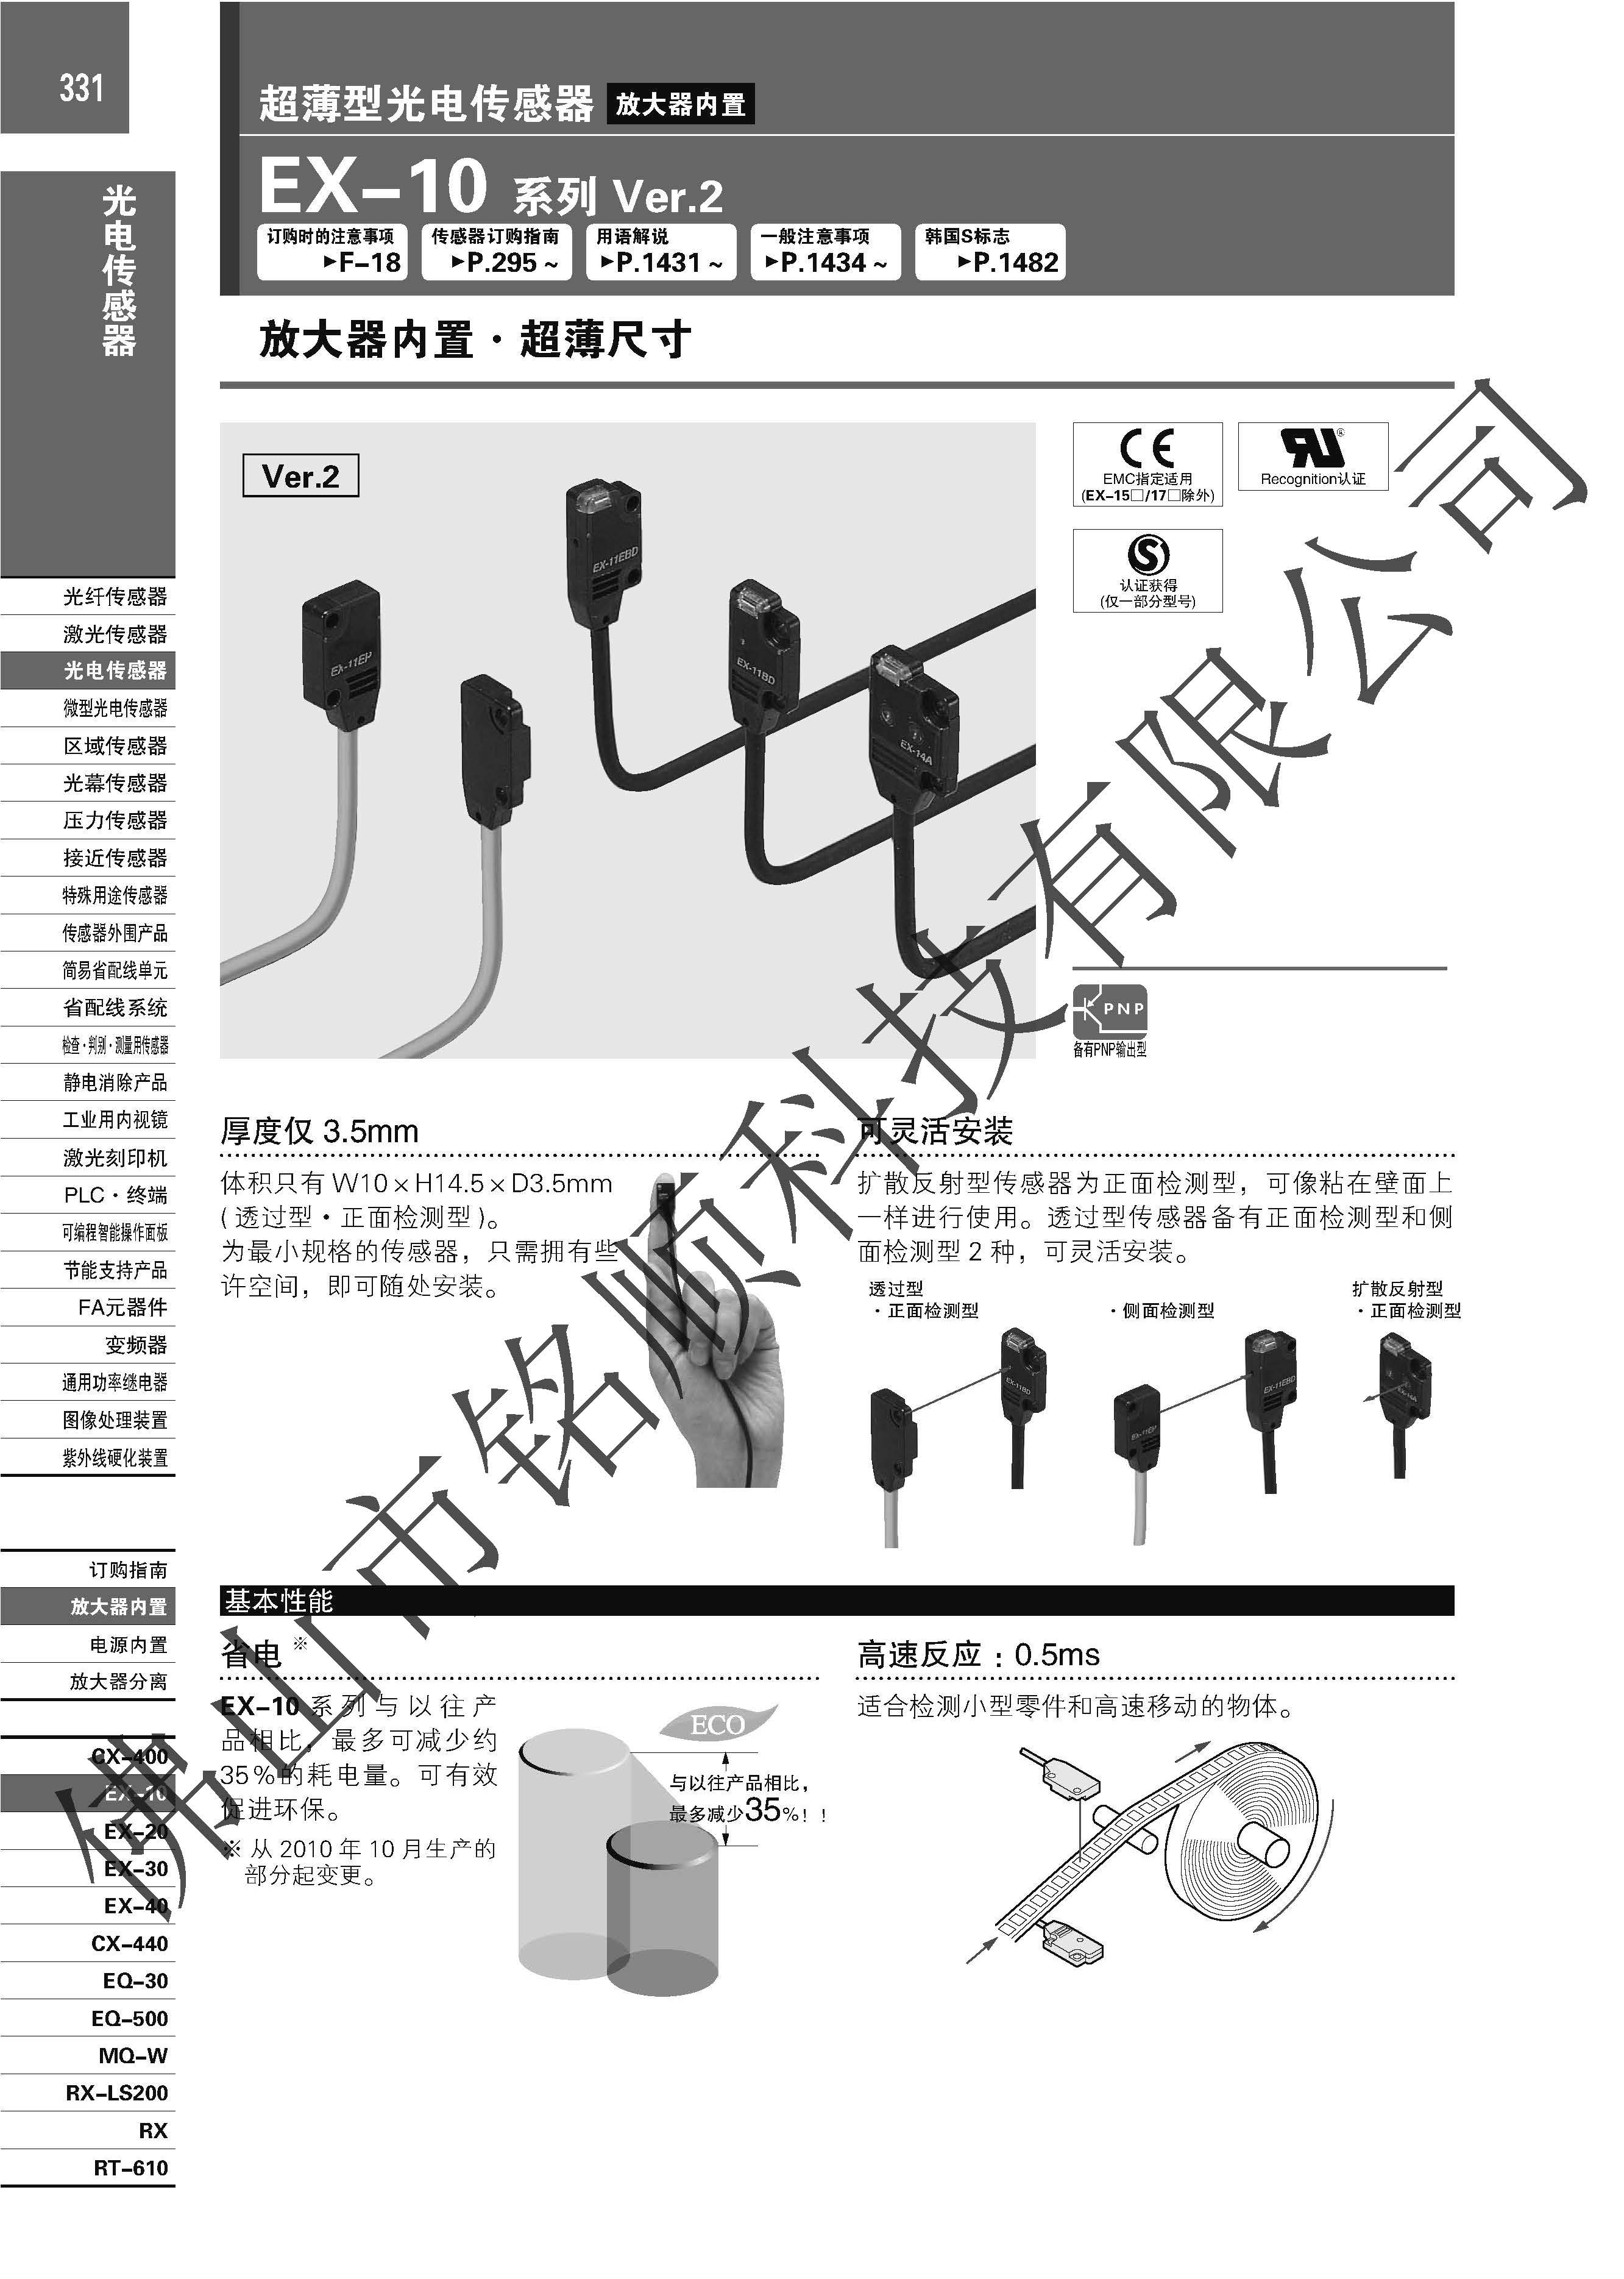 日本松下 超薄光电传感器 EX-14A EX-14A,超薄光电传感器,狭窄空间使用,性能稳定,日本松下